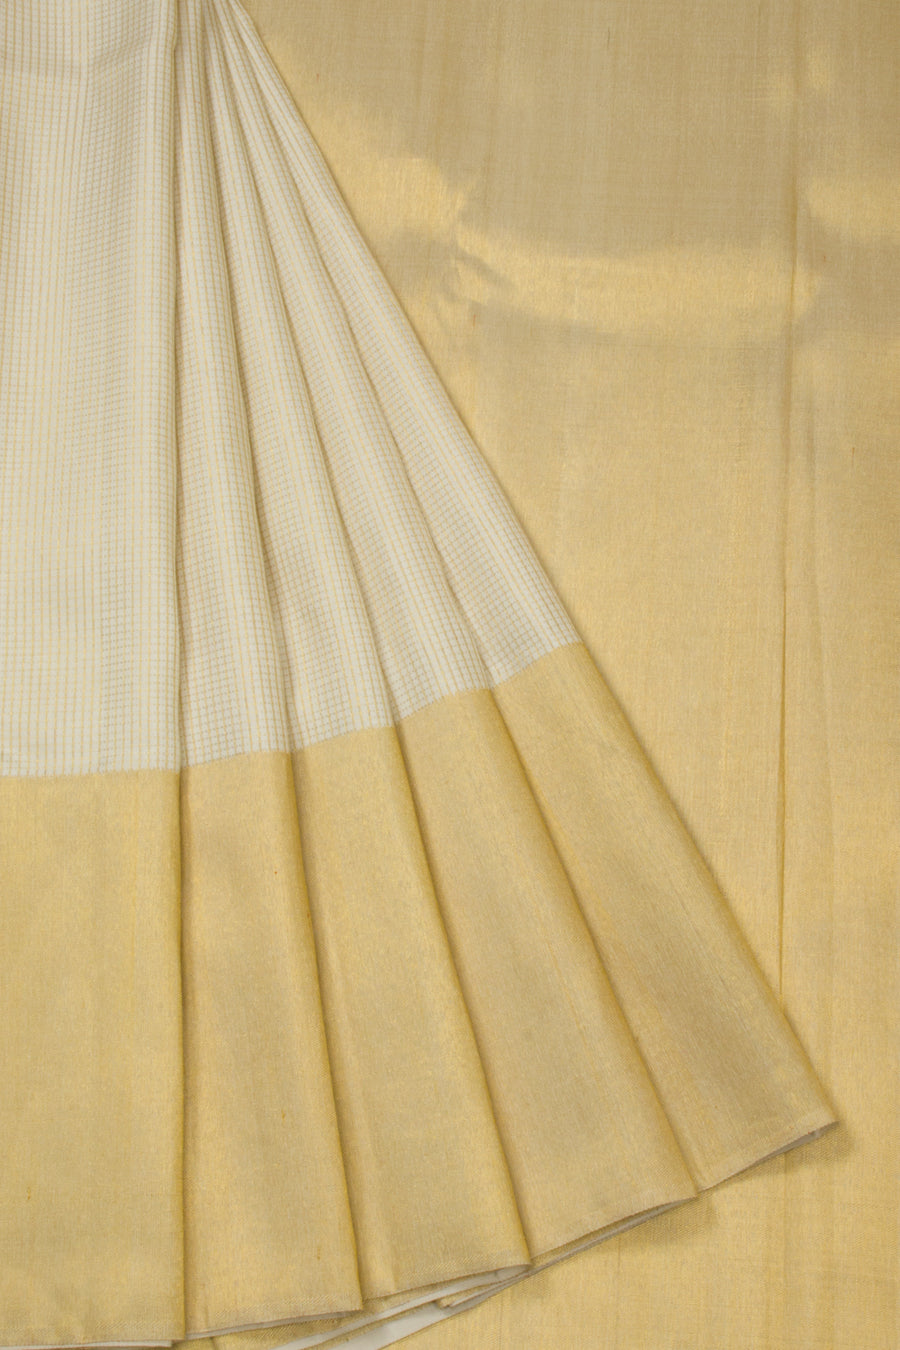 Off White Bridal Handloom Kanjivaram Silk Saree - Avishya